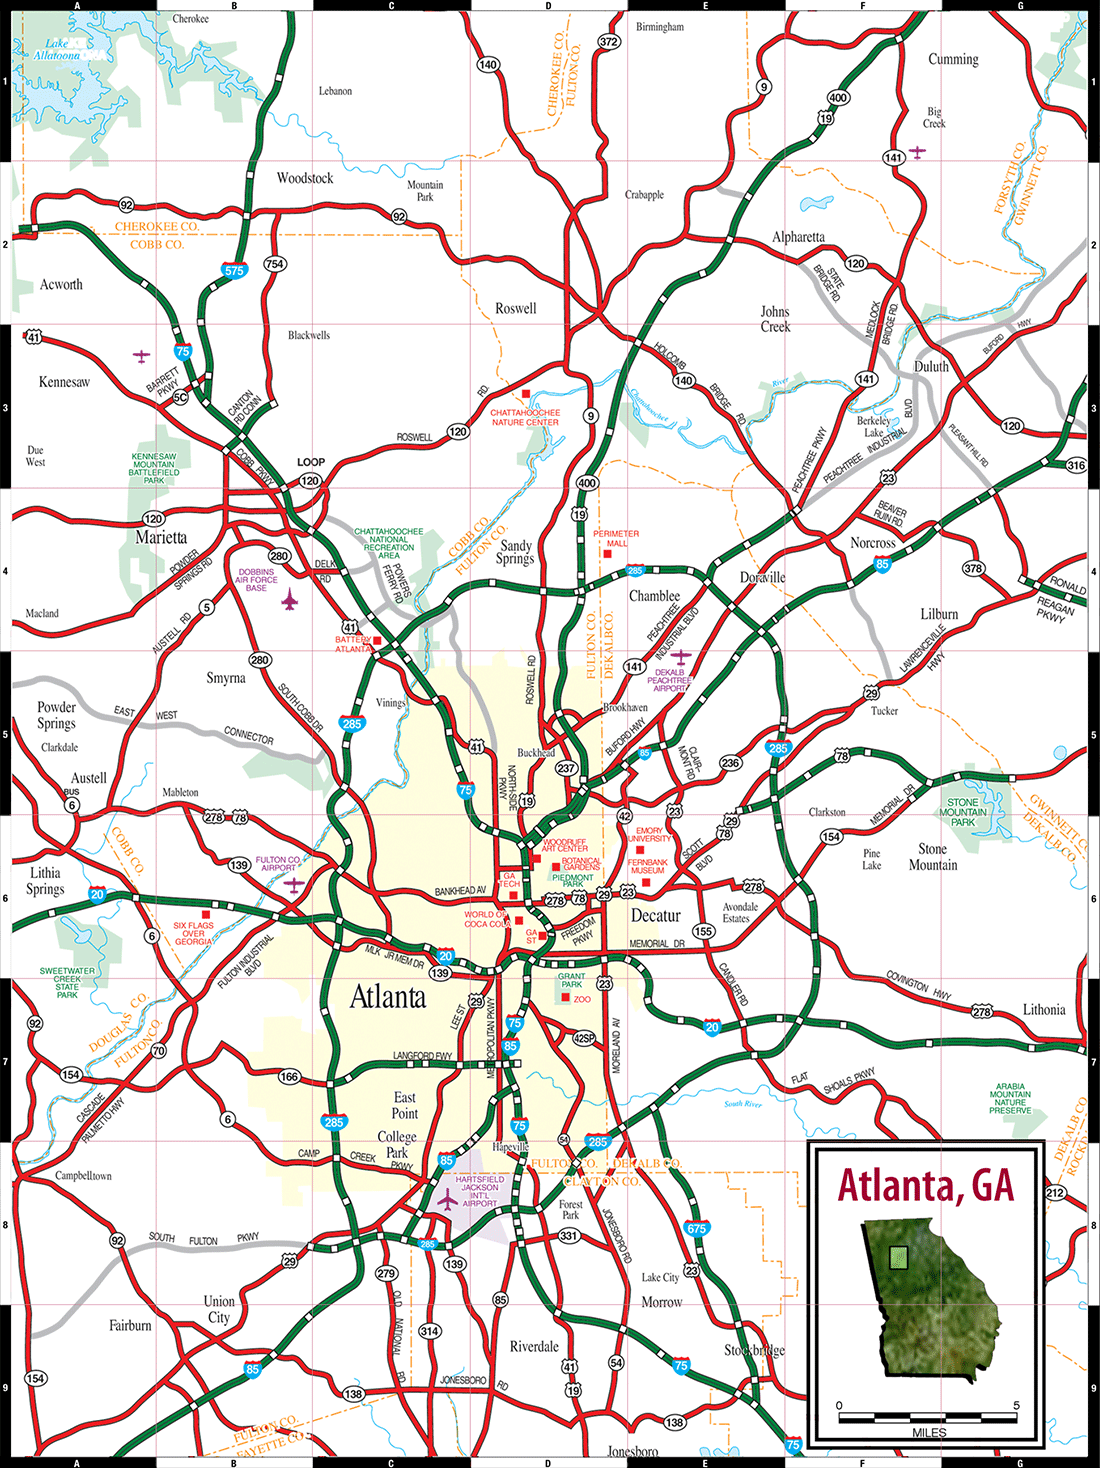 Show Map Of Atlanta Ga 